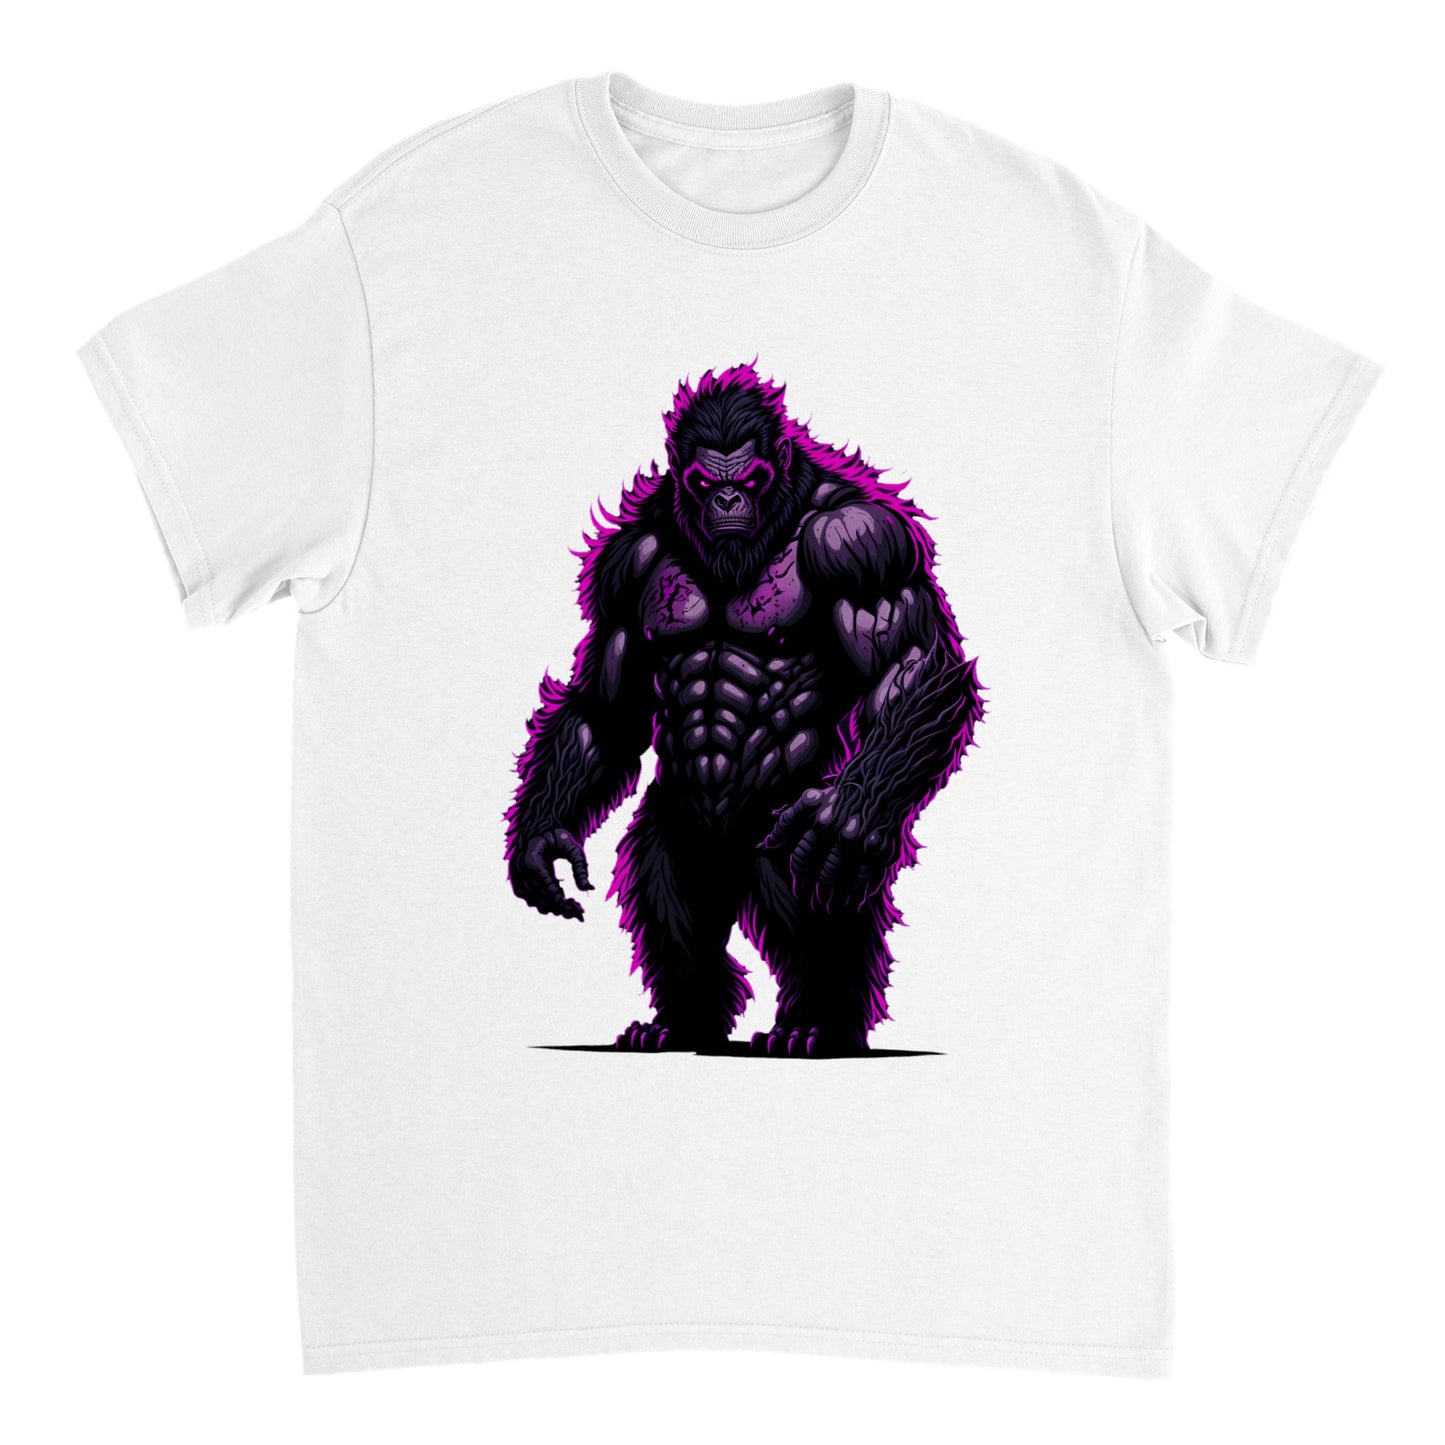 3D Bigfoot Art - Heavyweight Unisex Crewneck T-shirt 32